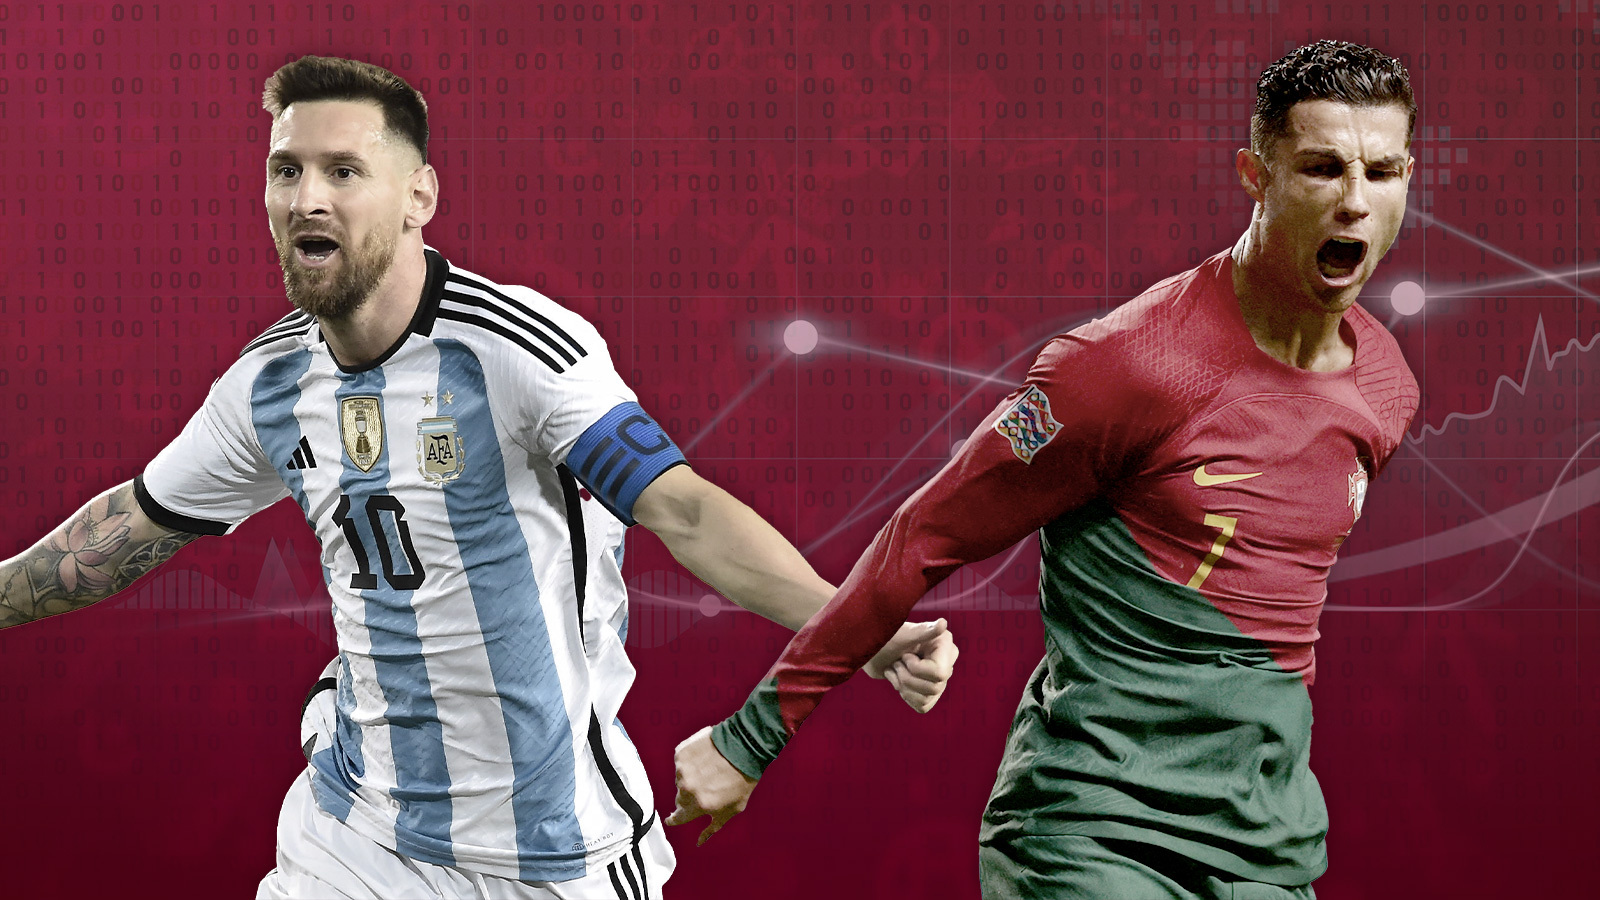 Los famosos que tienen más seguidores en Instagram: Messi y CR7. Archivo.